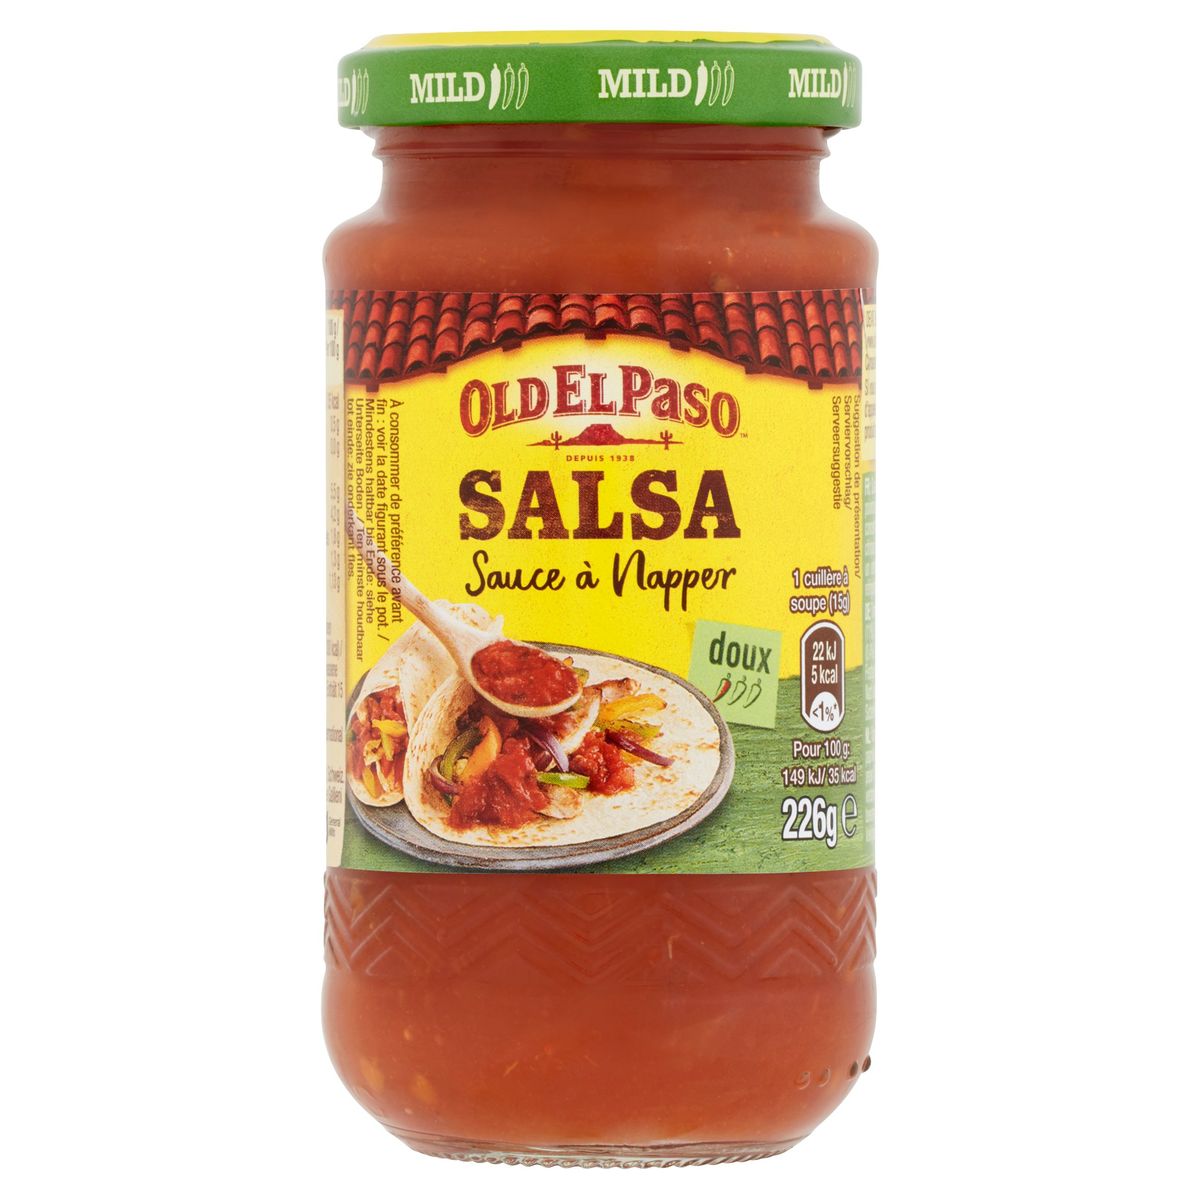 Old El Paso Salsa Sauce à Napper Doux 226 g